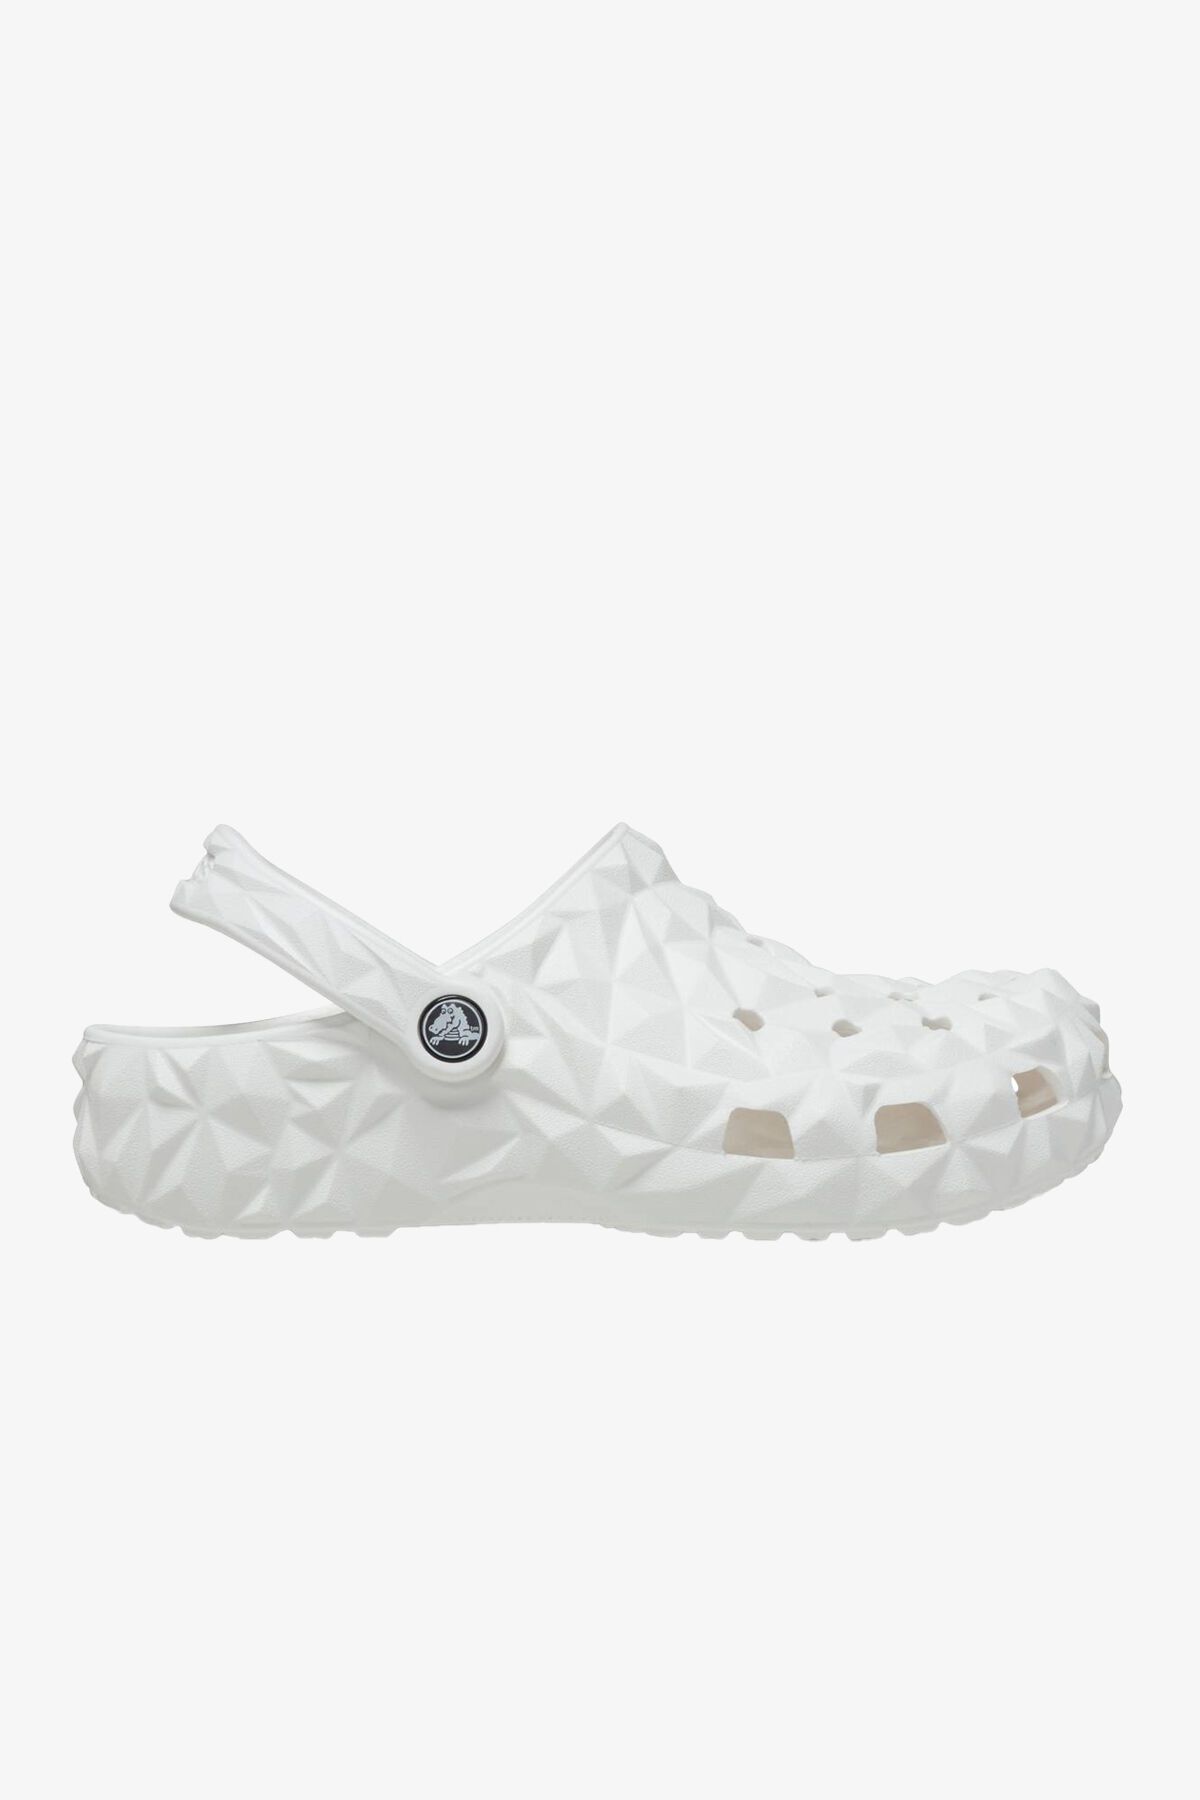 Crocs 209563 Classic Heometric Clog Sandals Unisex